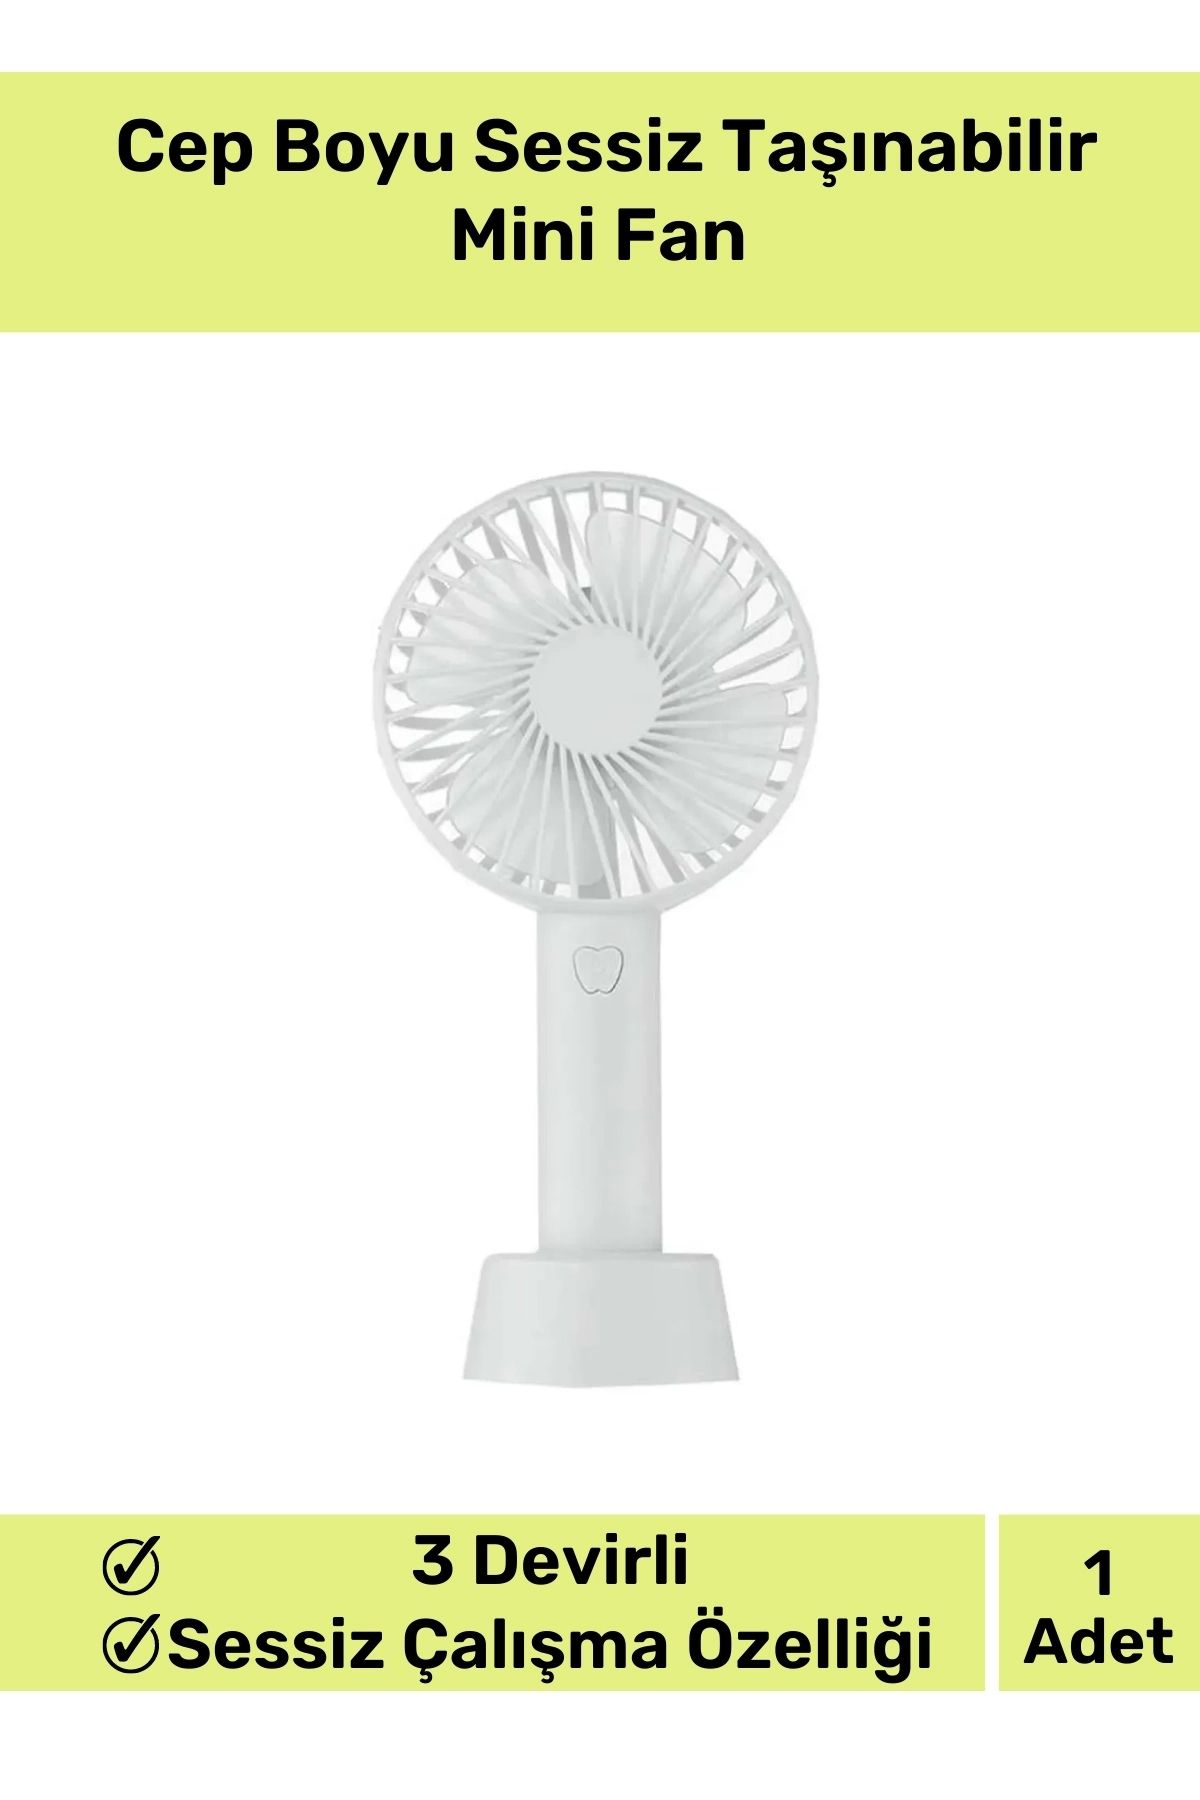 Genel Markalar Premium Cep Boyu Sessiz Taşınabilir Mini Fan Usb Şarjlı Pervaneli Soğutucu Küçük El Vantilatörü